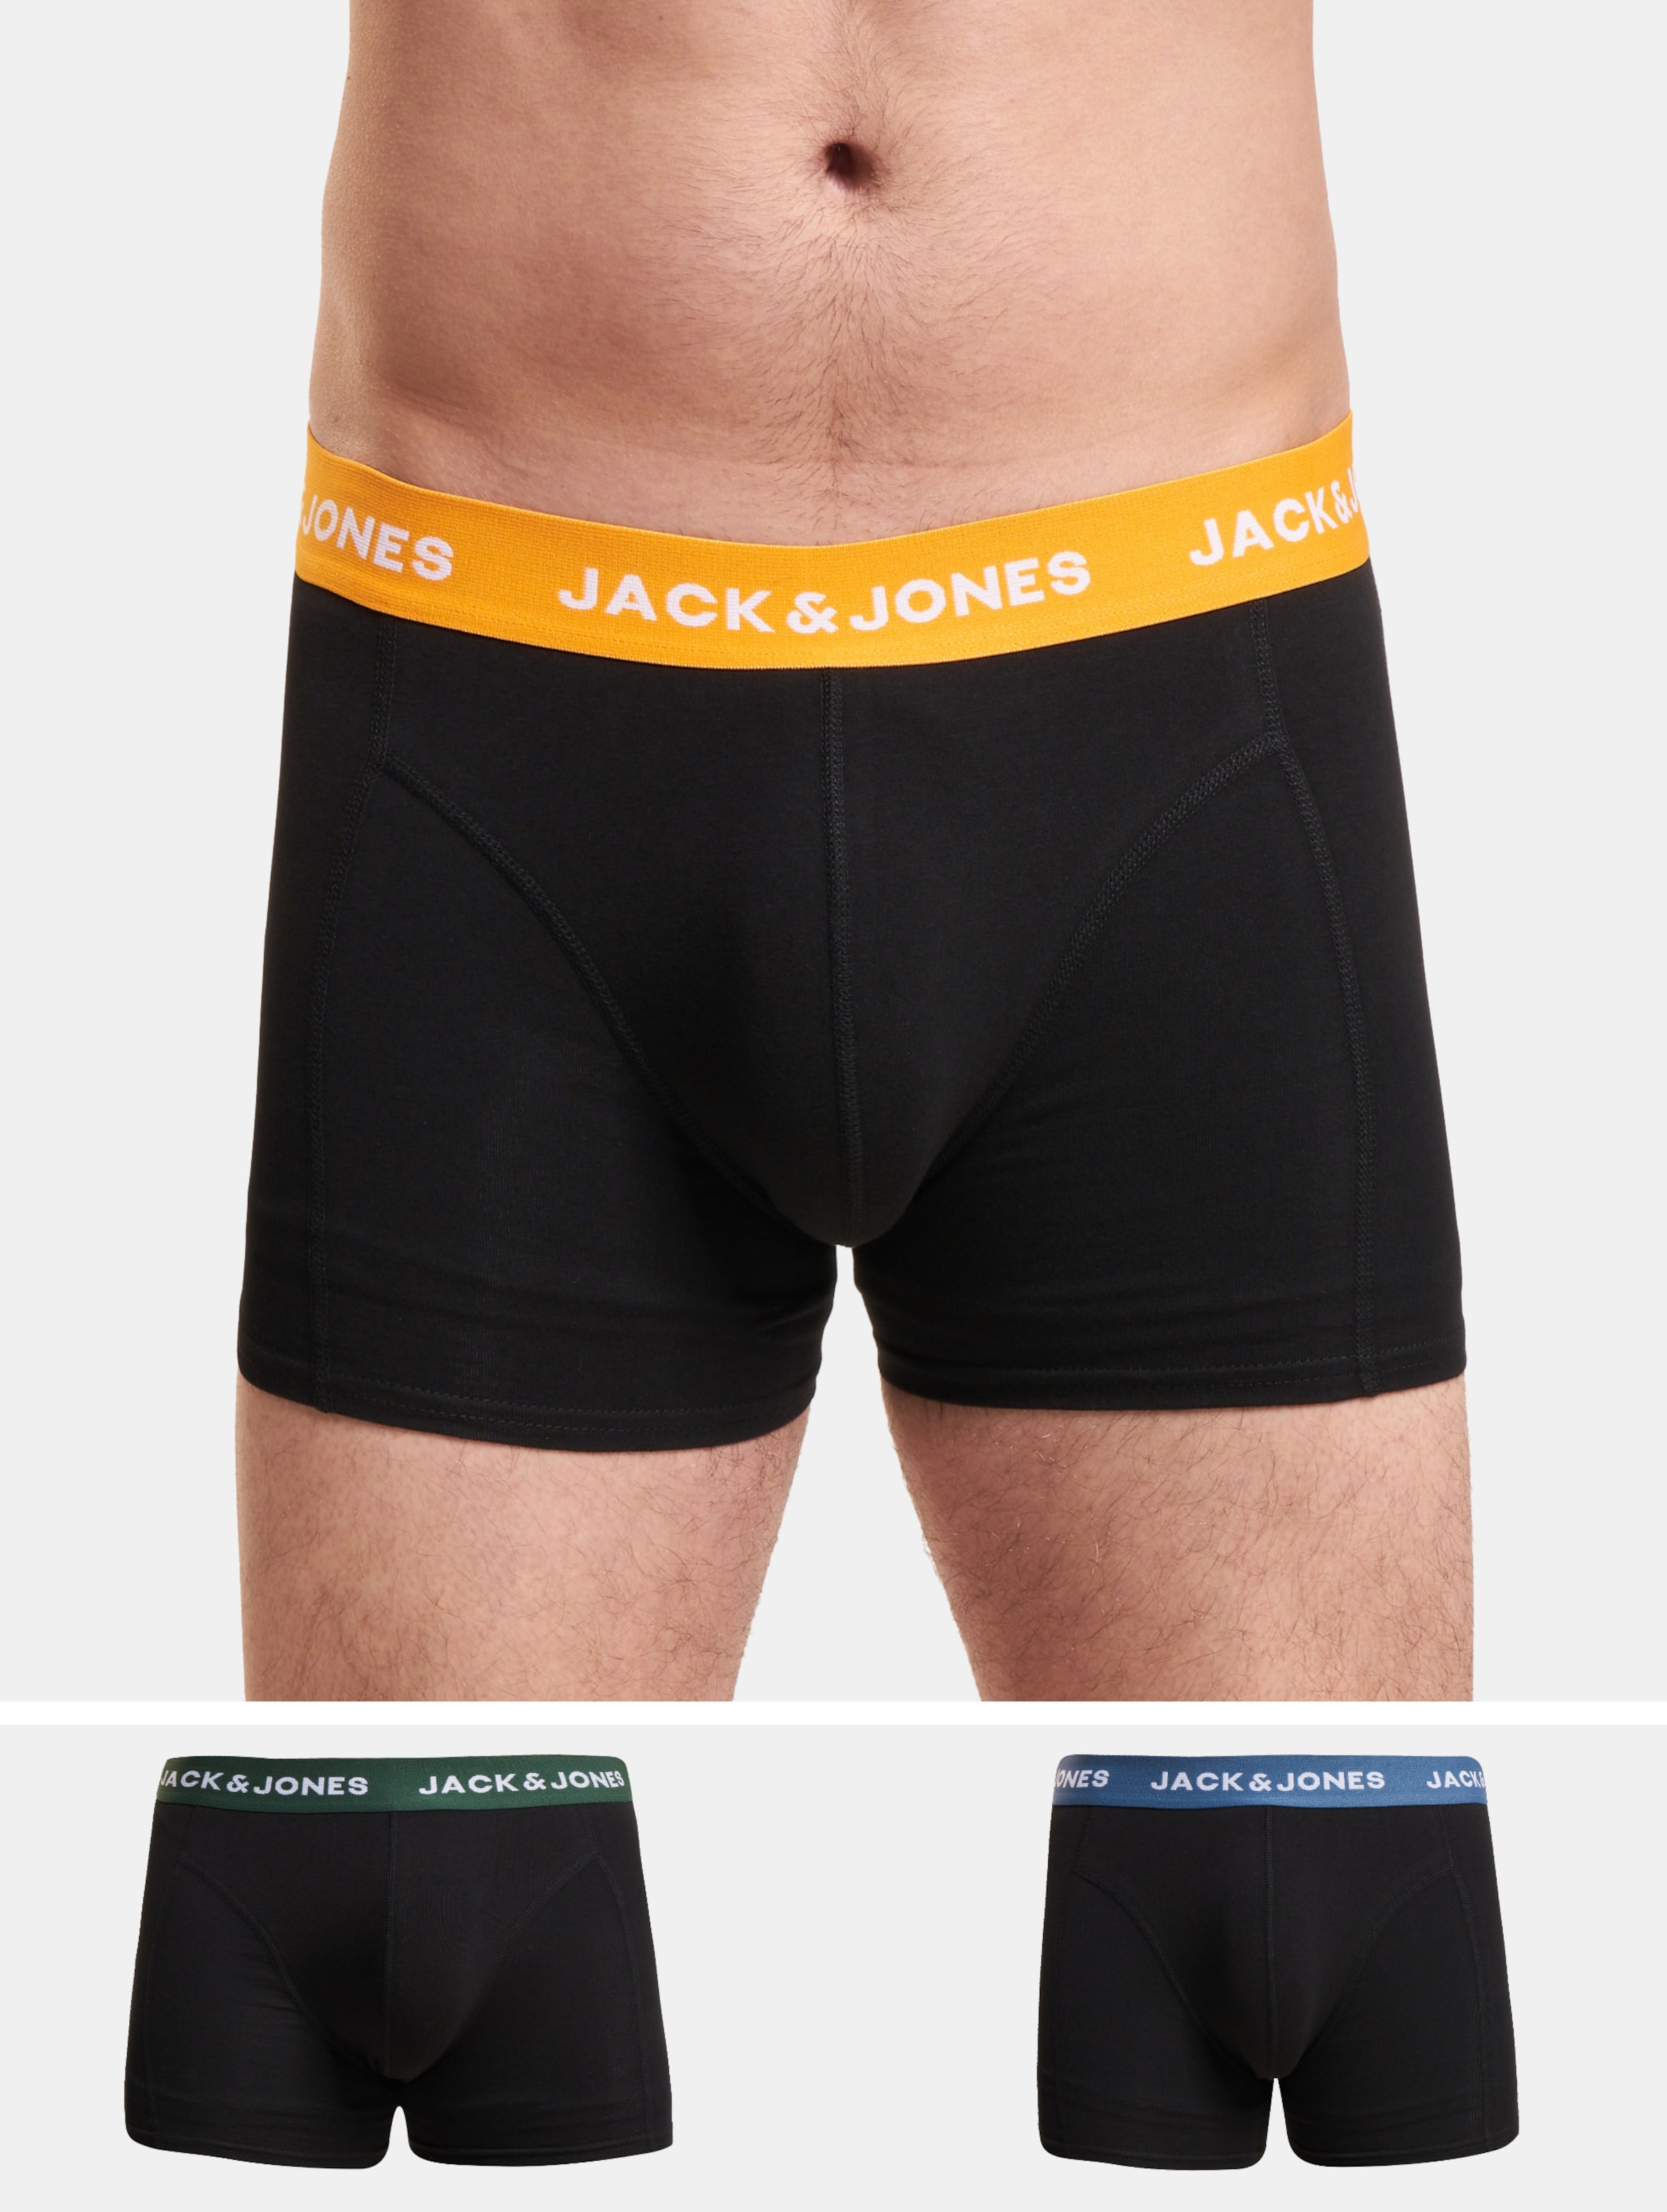 JACK & JONES Jacgab trunks (3-pack) - heren boxers normale lengte - donkergroen en zwart - Maat: M